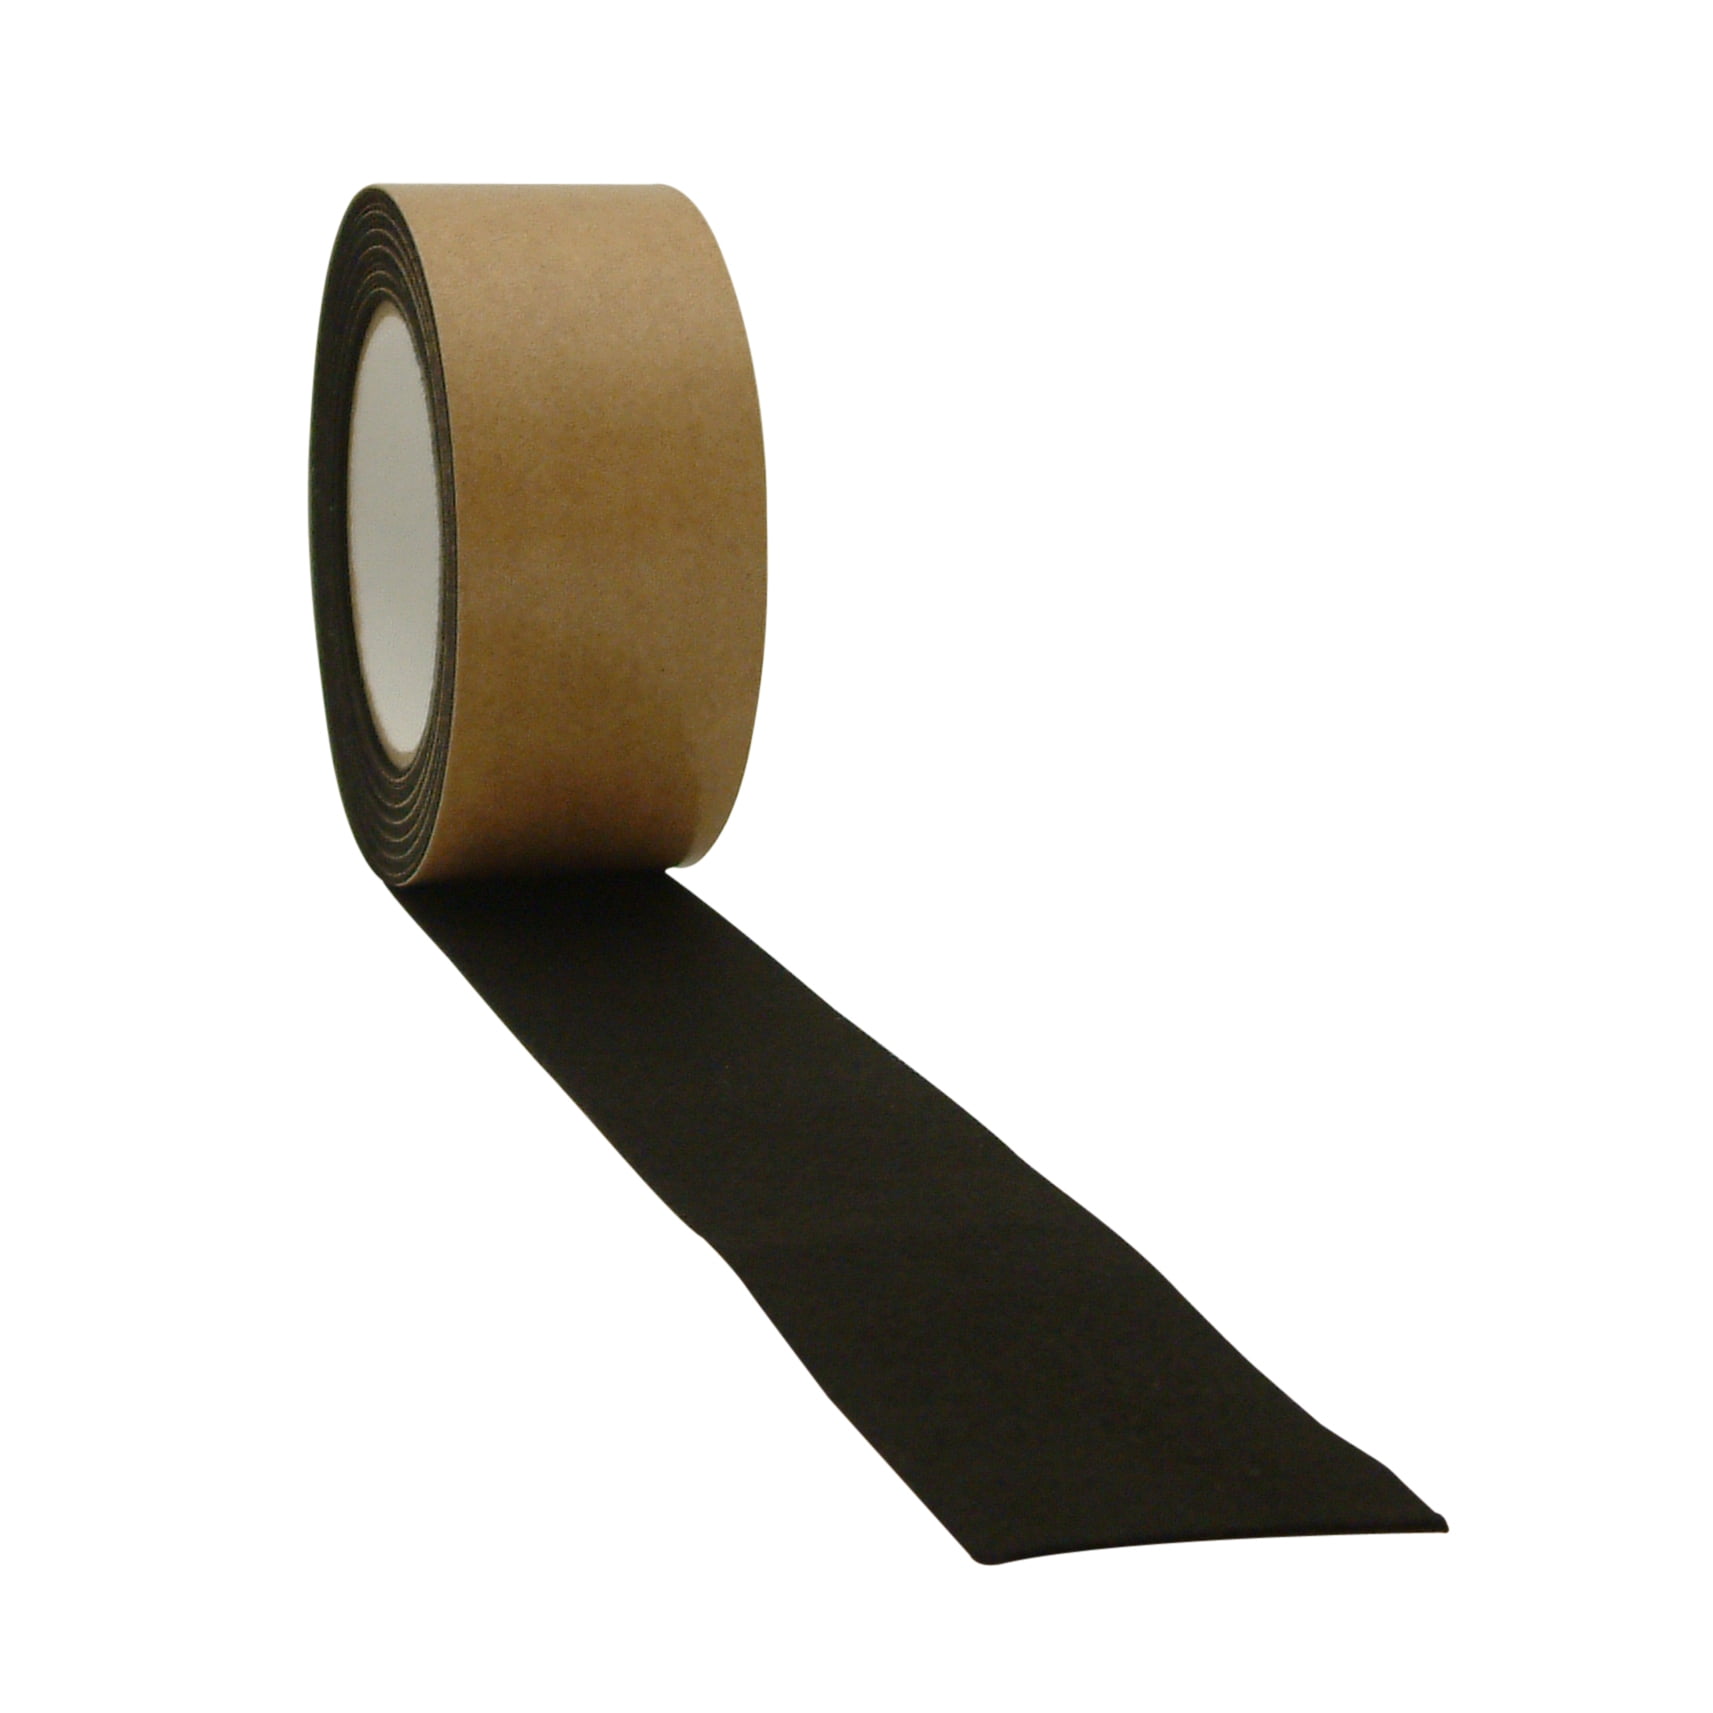 Jvcc FELT-06 Polyester Felt Tape 2 in x 15 ft Black